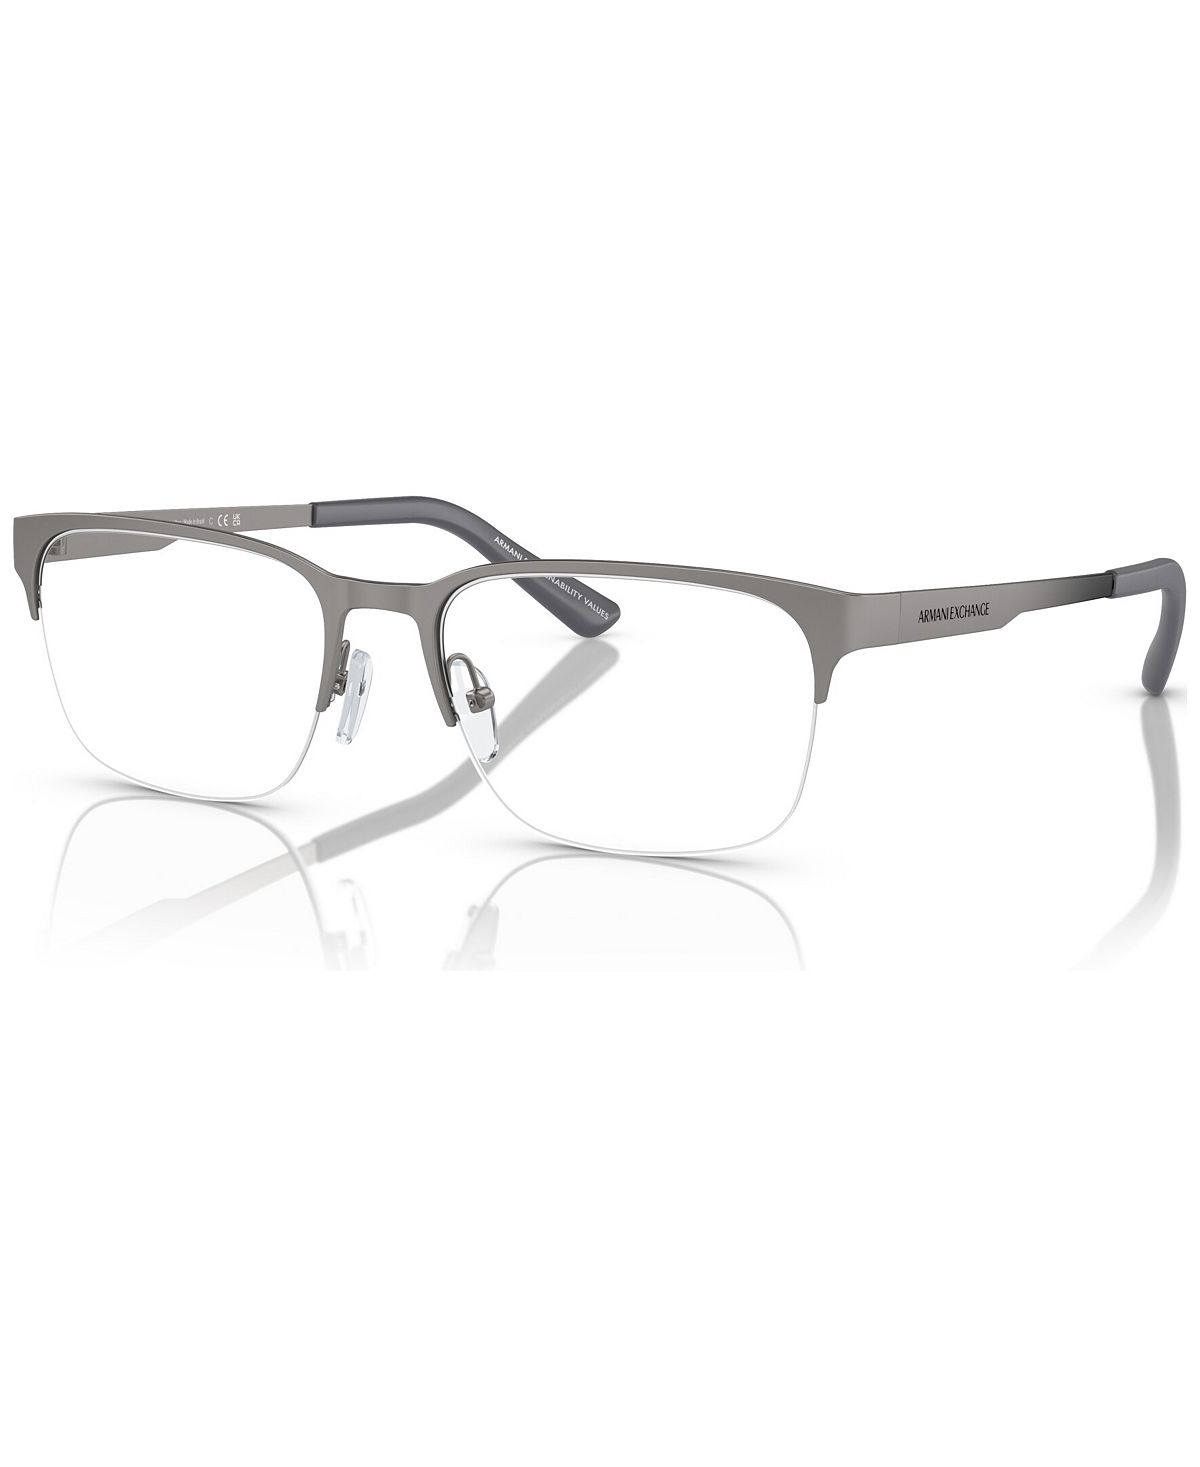 Мужские прямоугольные очки, AX1060 55 Armani Exchange зажигалка lotus 6720 fusion gunmetal matte